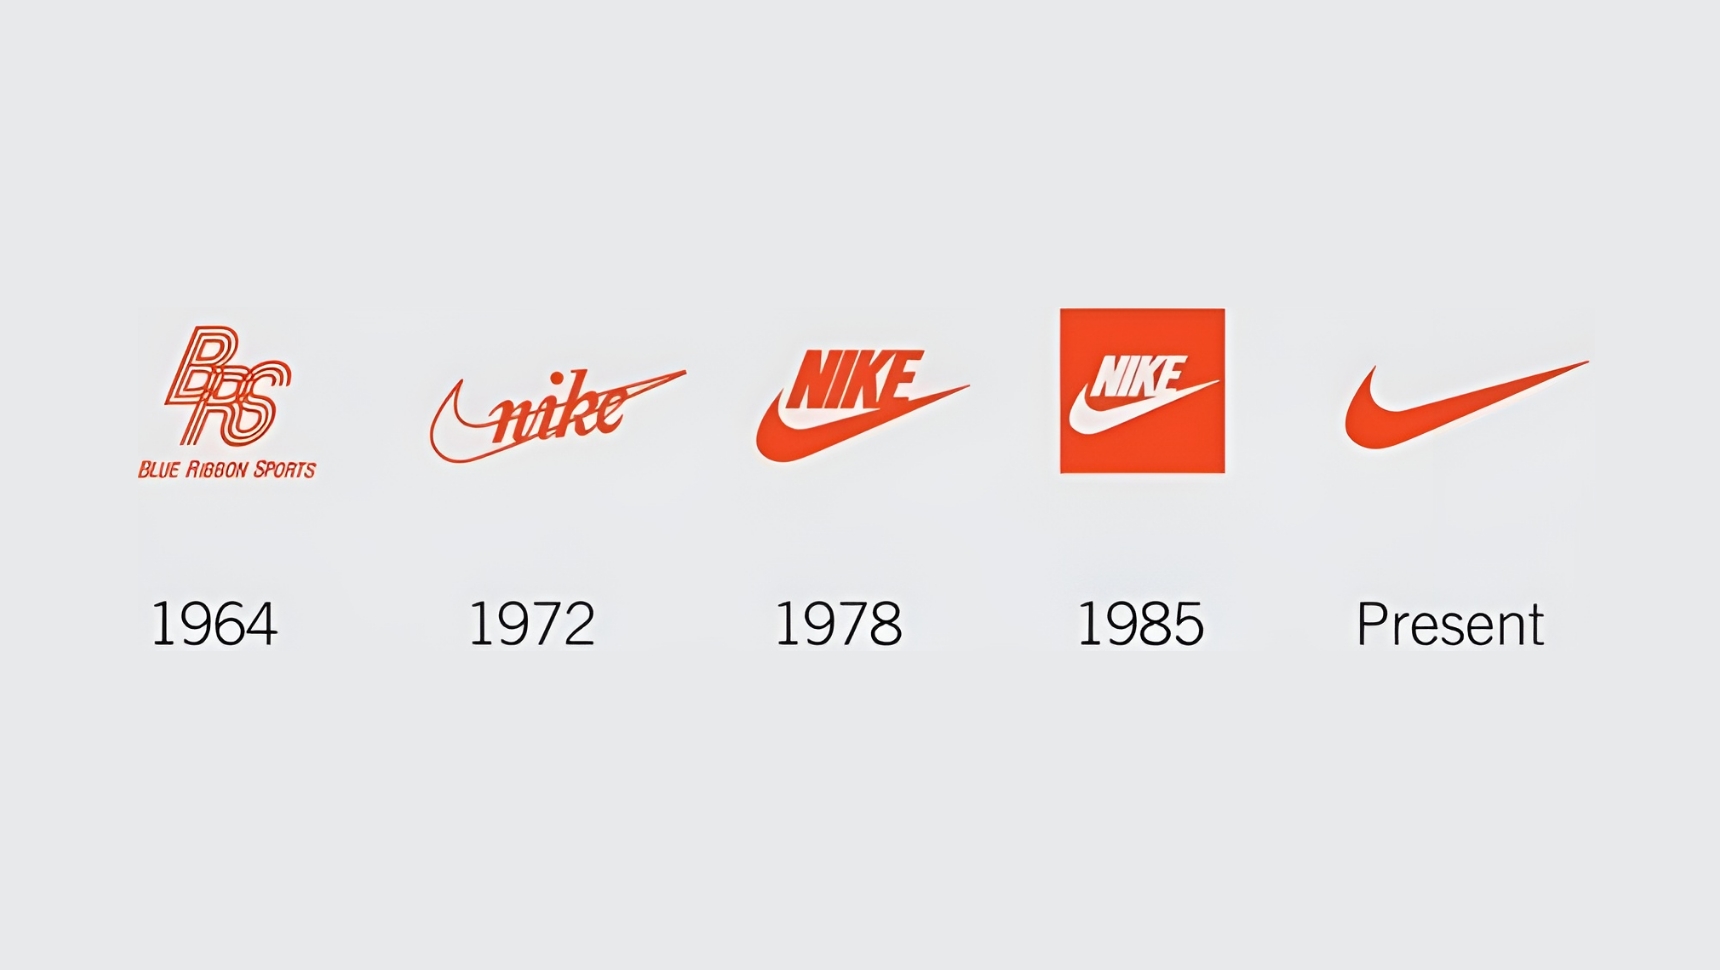 Evolution of Nike's branding